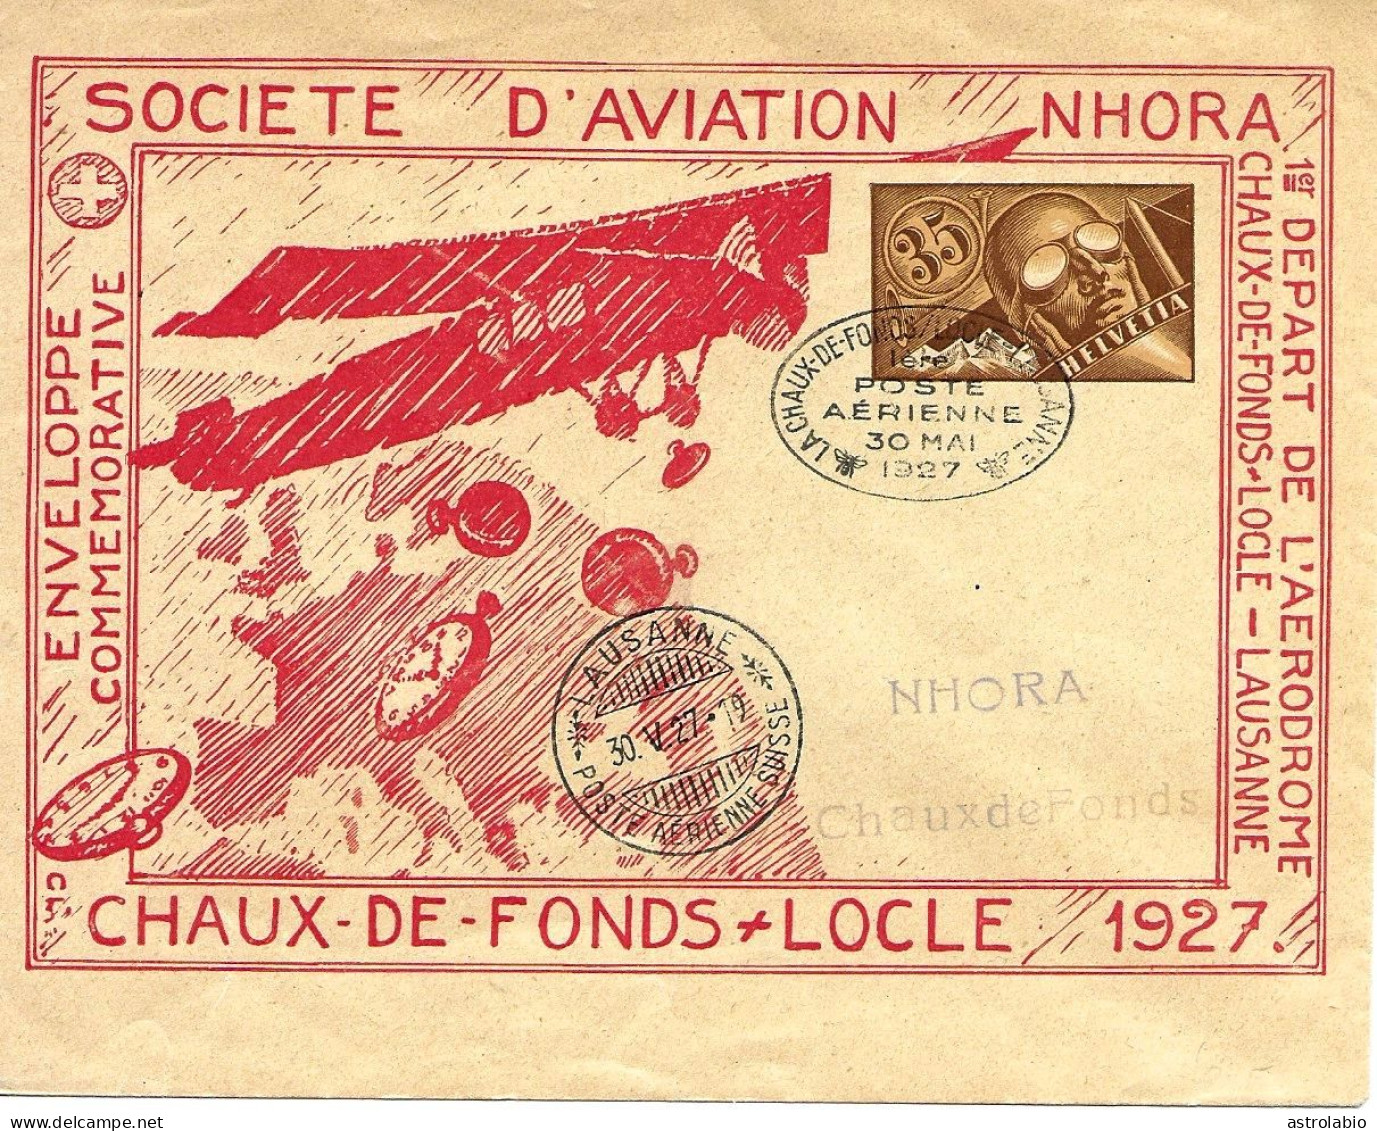 Navigation Horlogère Aérienne NHORA Suisse 1927, Entier Postal-enveloppe, Carte Voyagée - Horlogerie